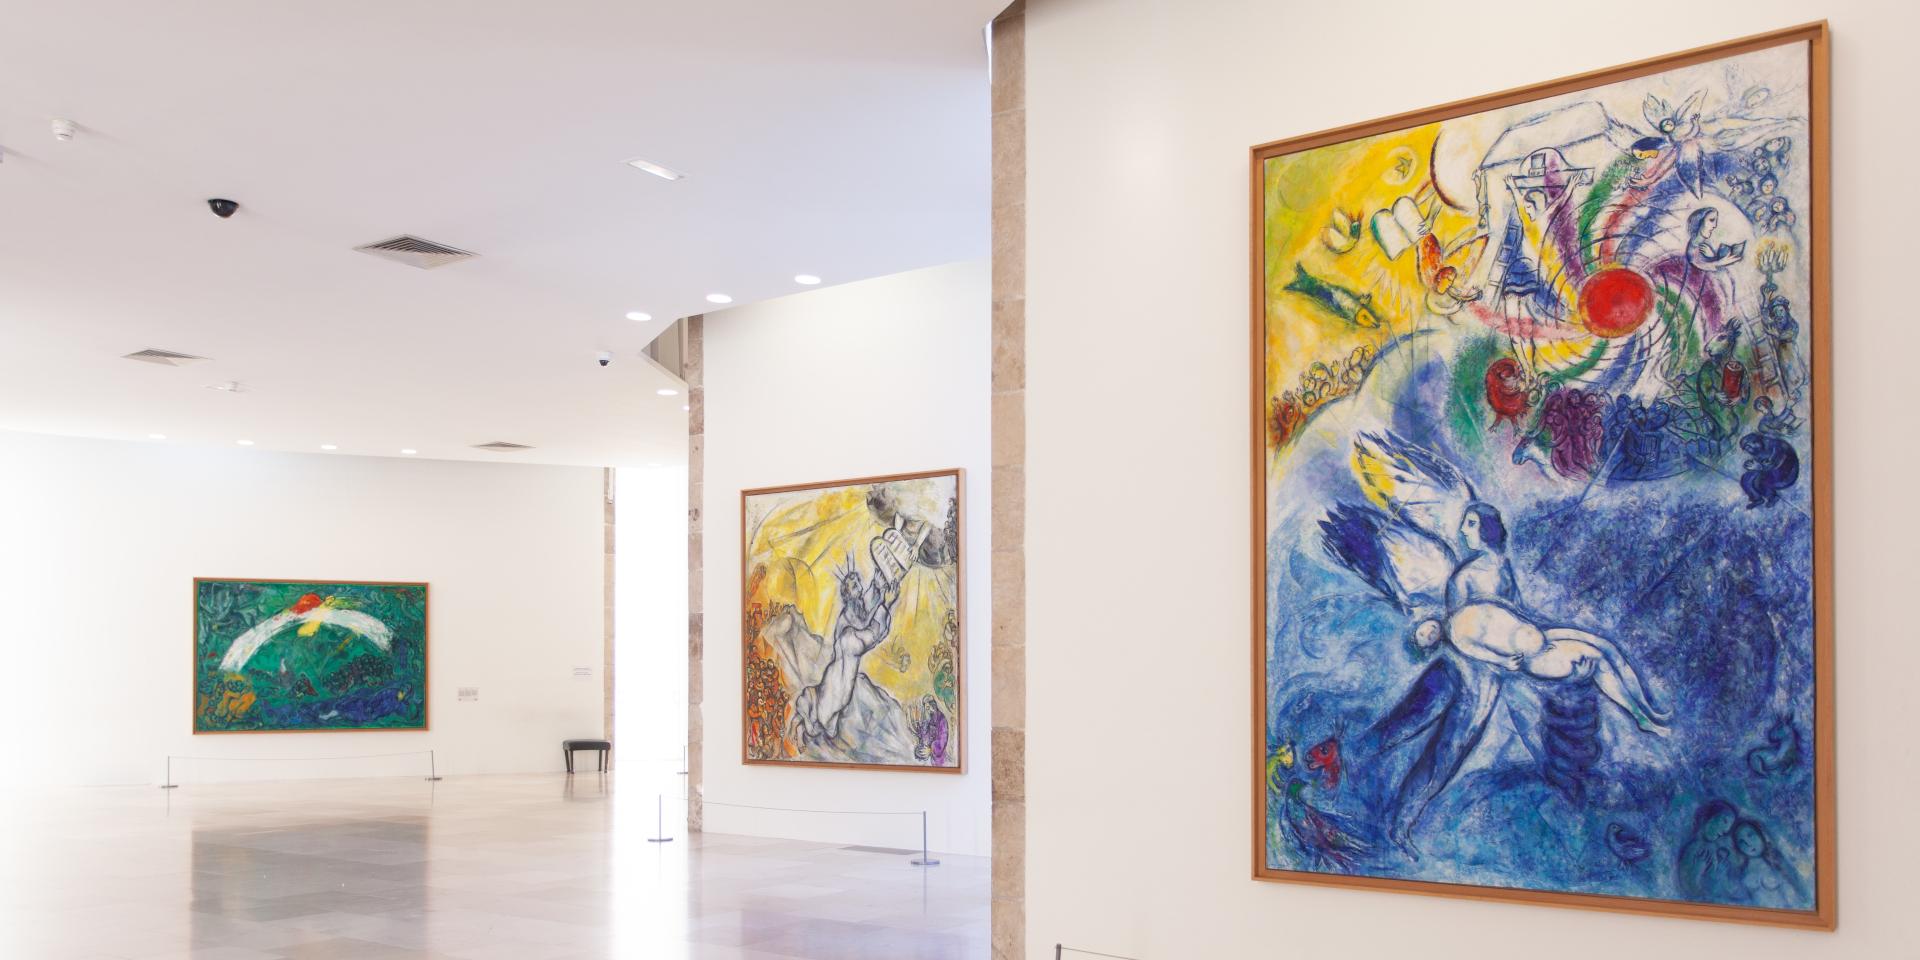 vue de la salle du Message Biblique, avec les œuvres de Marc Chagall (de droite à gauche), La Création de l'Homme (1956-1958, huile sur toile), Moïse recevant les Tables de la Loi (1960-1966, hule sur toile), Noé et l'arc-en-ciel (1961-1966, huile sur toile). Photo : © musées nationaux du XXe siècle des Alpes-Maritimes © ADAGP, Paris, 2022.